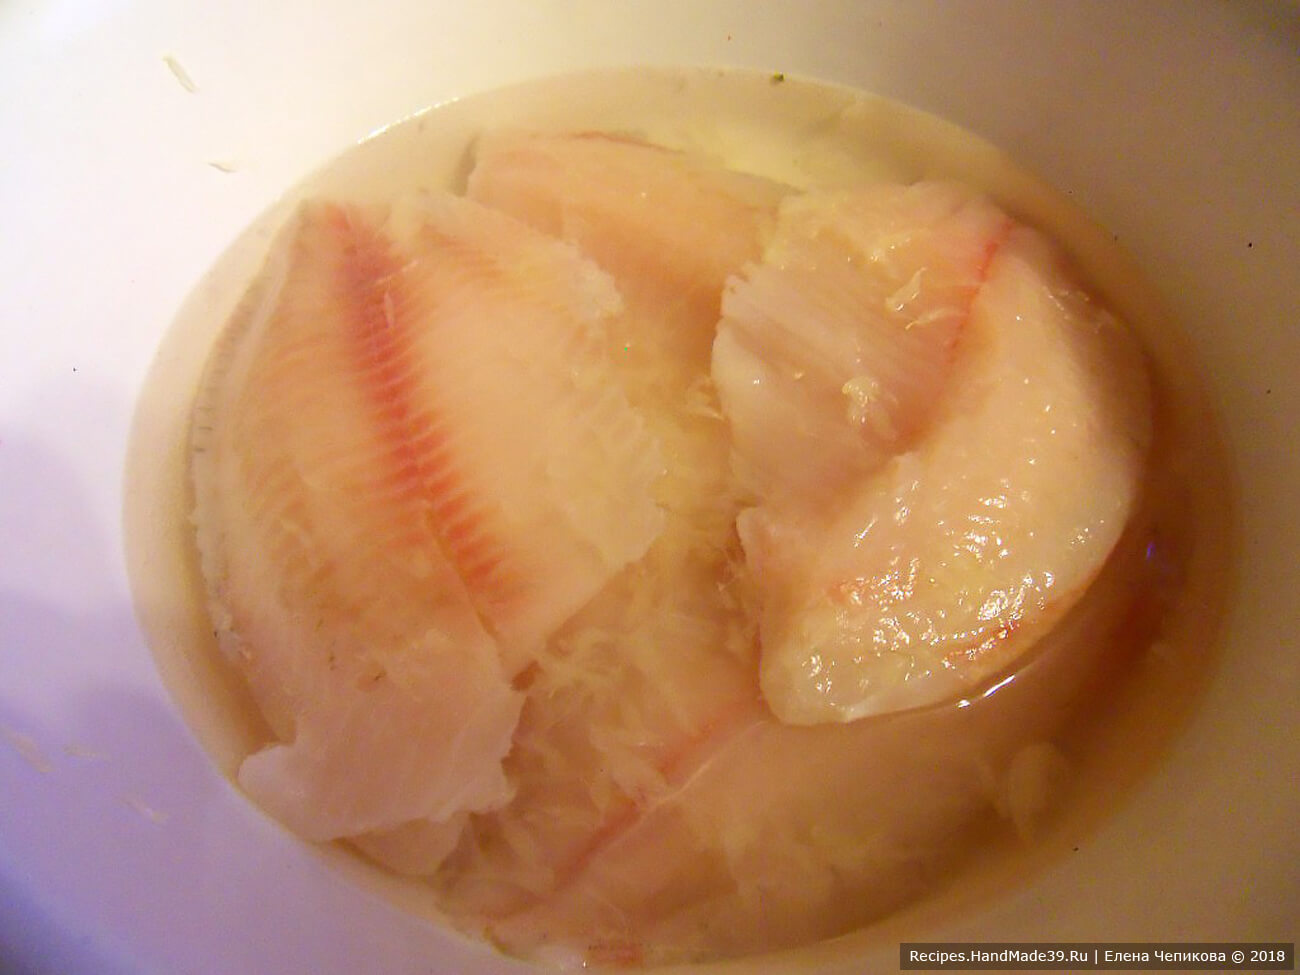 Филе белой рыбы (тиляпия, морской язык) промыть, обсушить сбрызнуть соком лимона, посолить, поперчить. Отварить в небольшом количестве воды